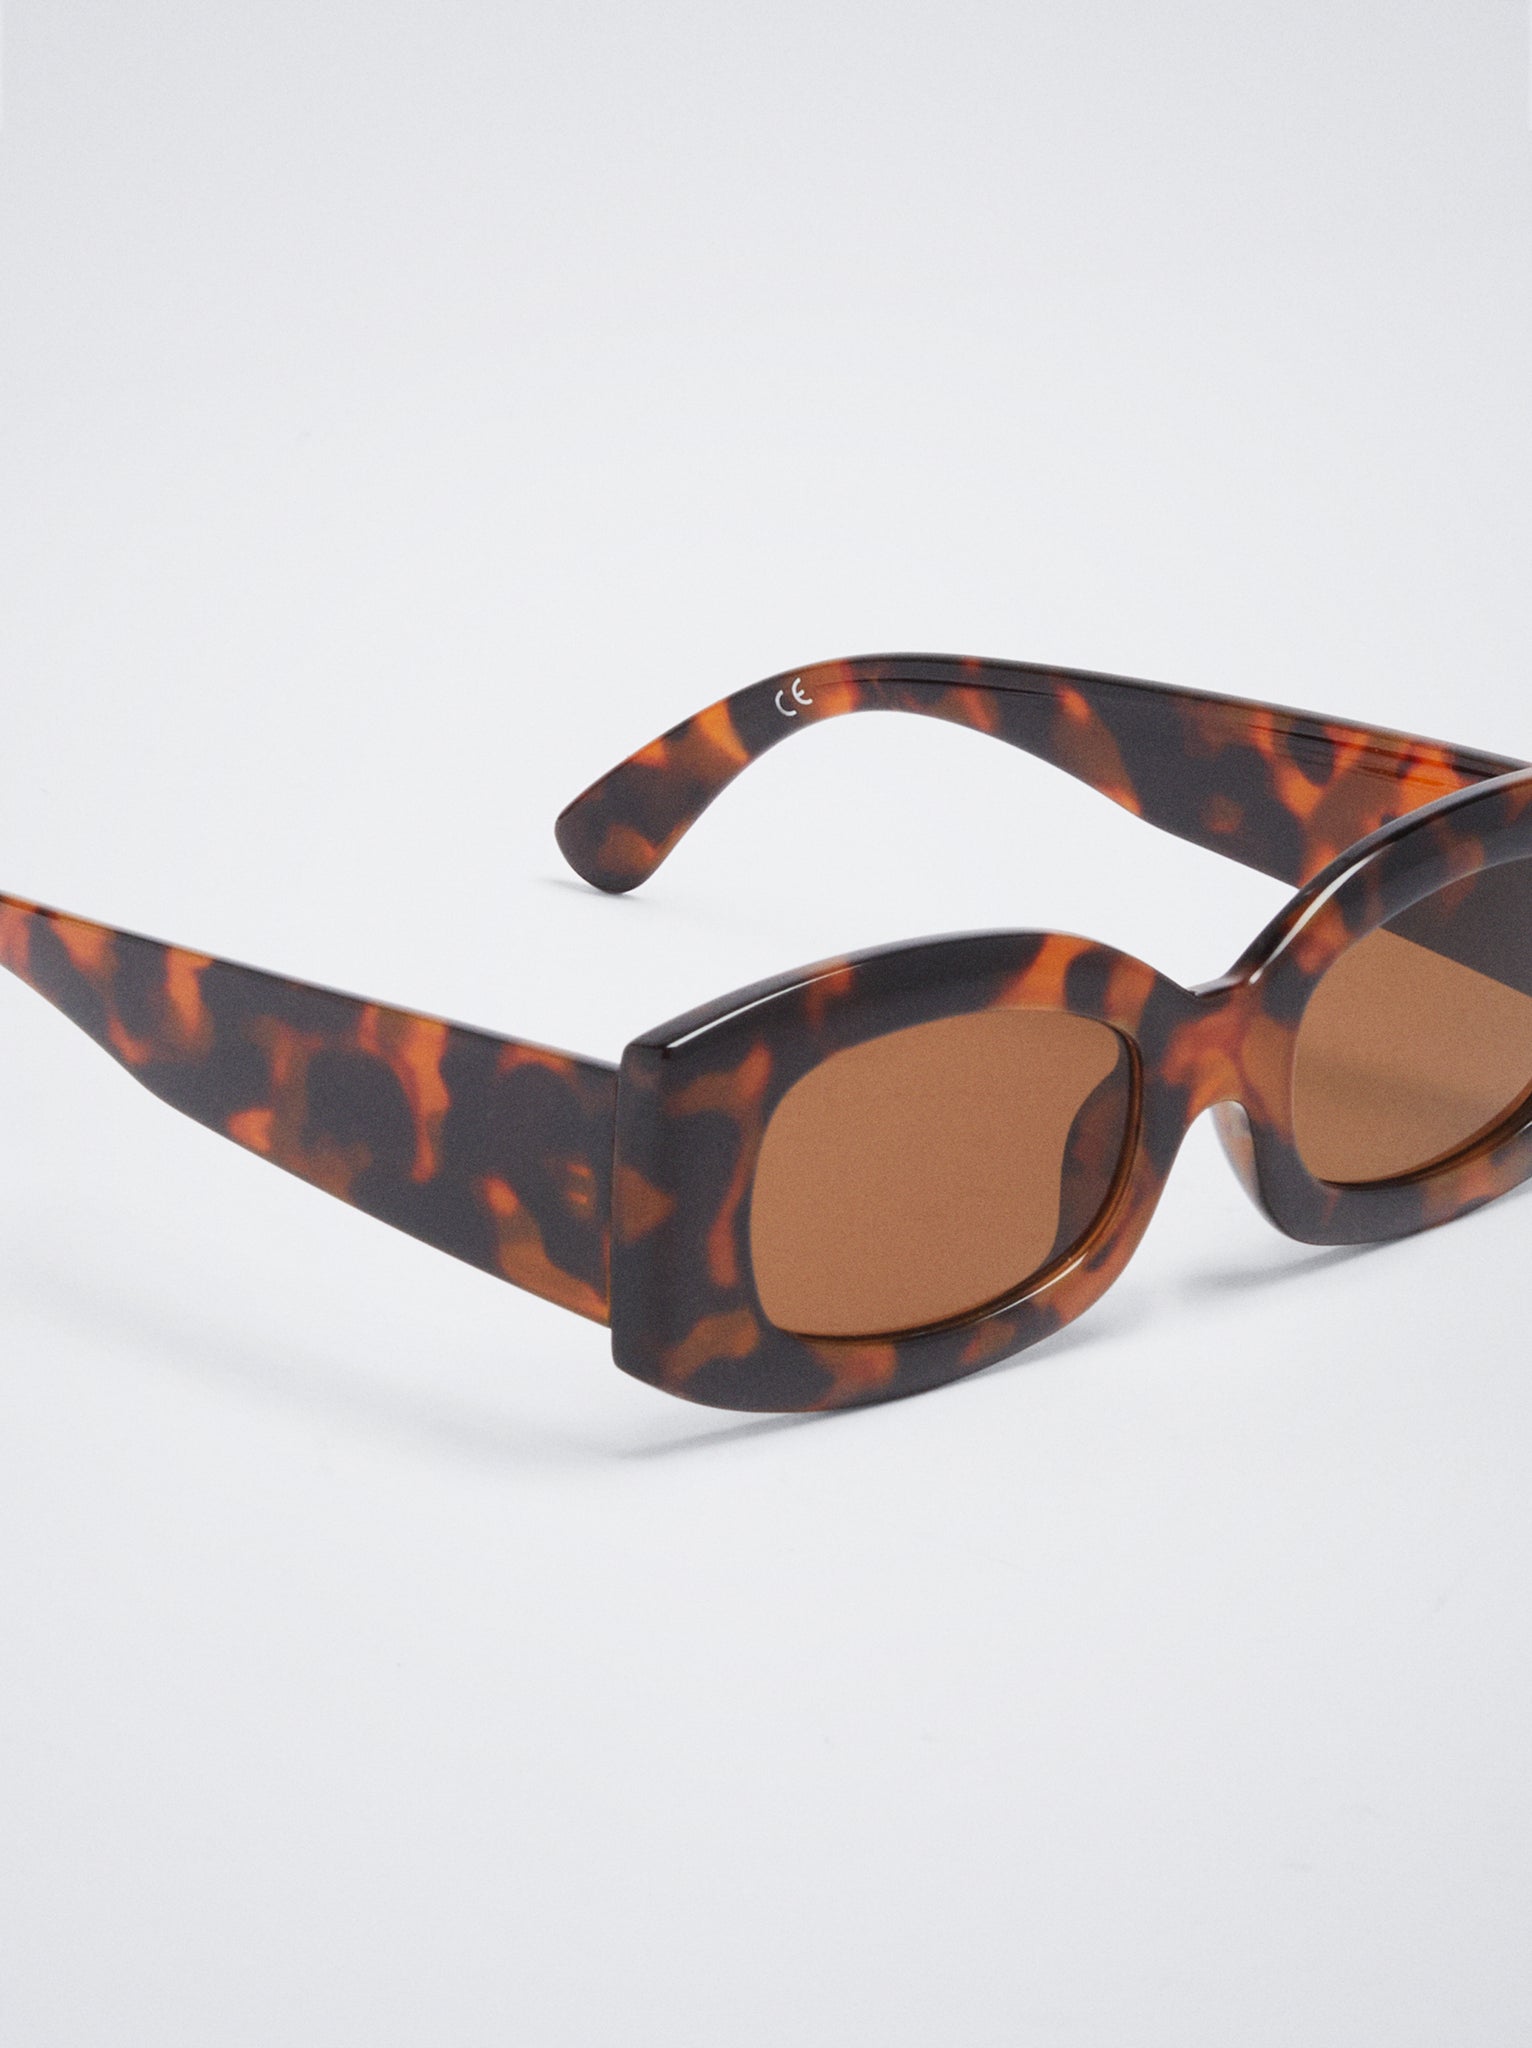 Square Tortoiseshell Sunglasses